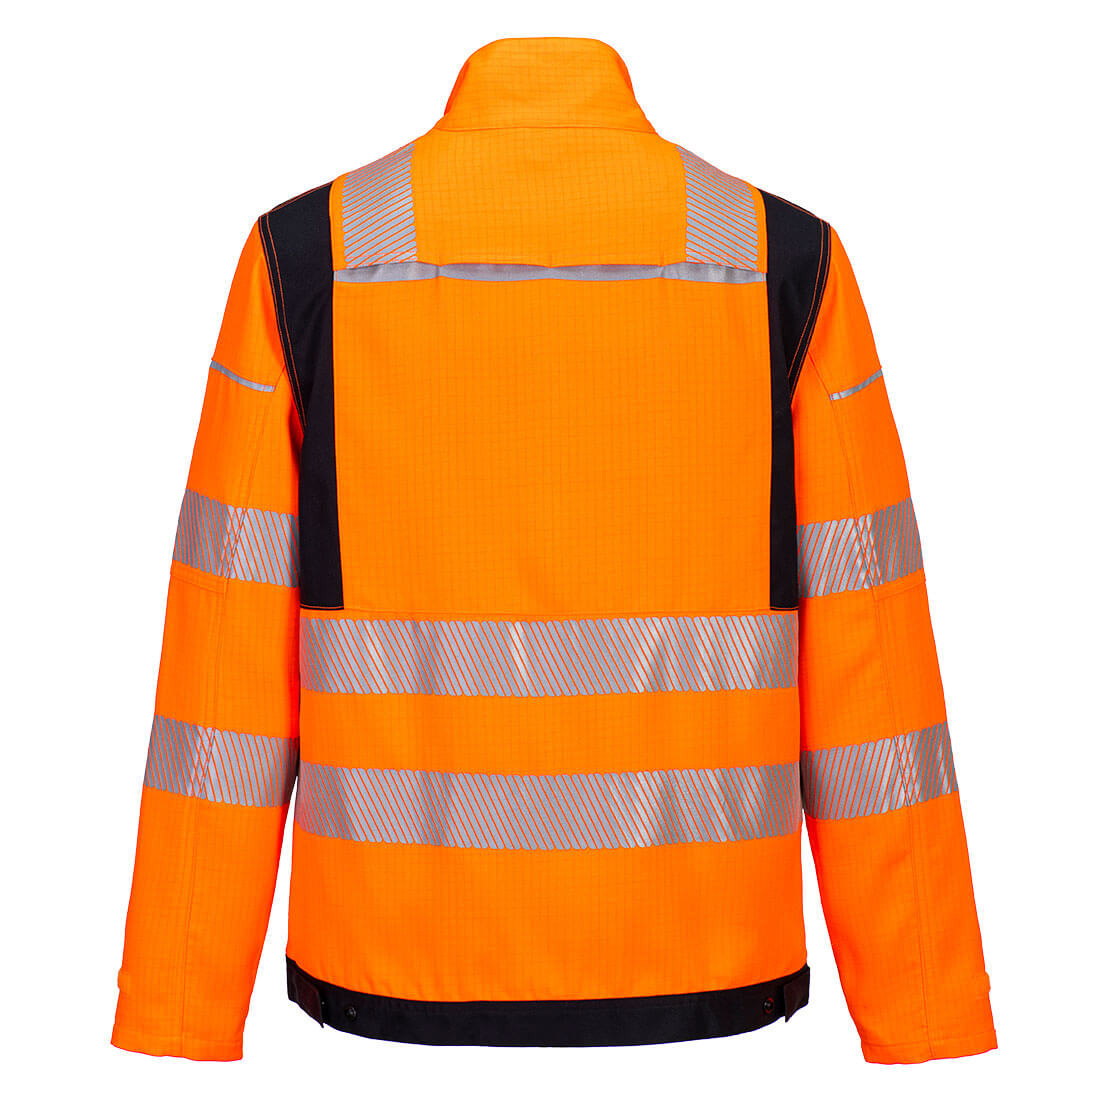 PW3 FR HVO Work Jacket - Safetywear